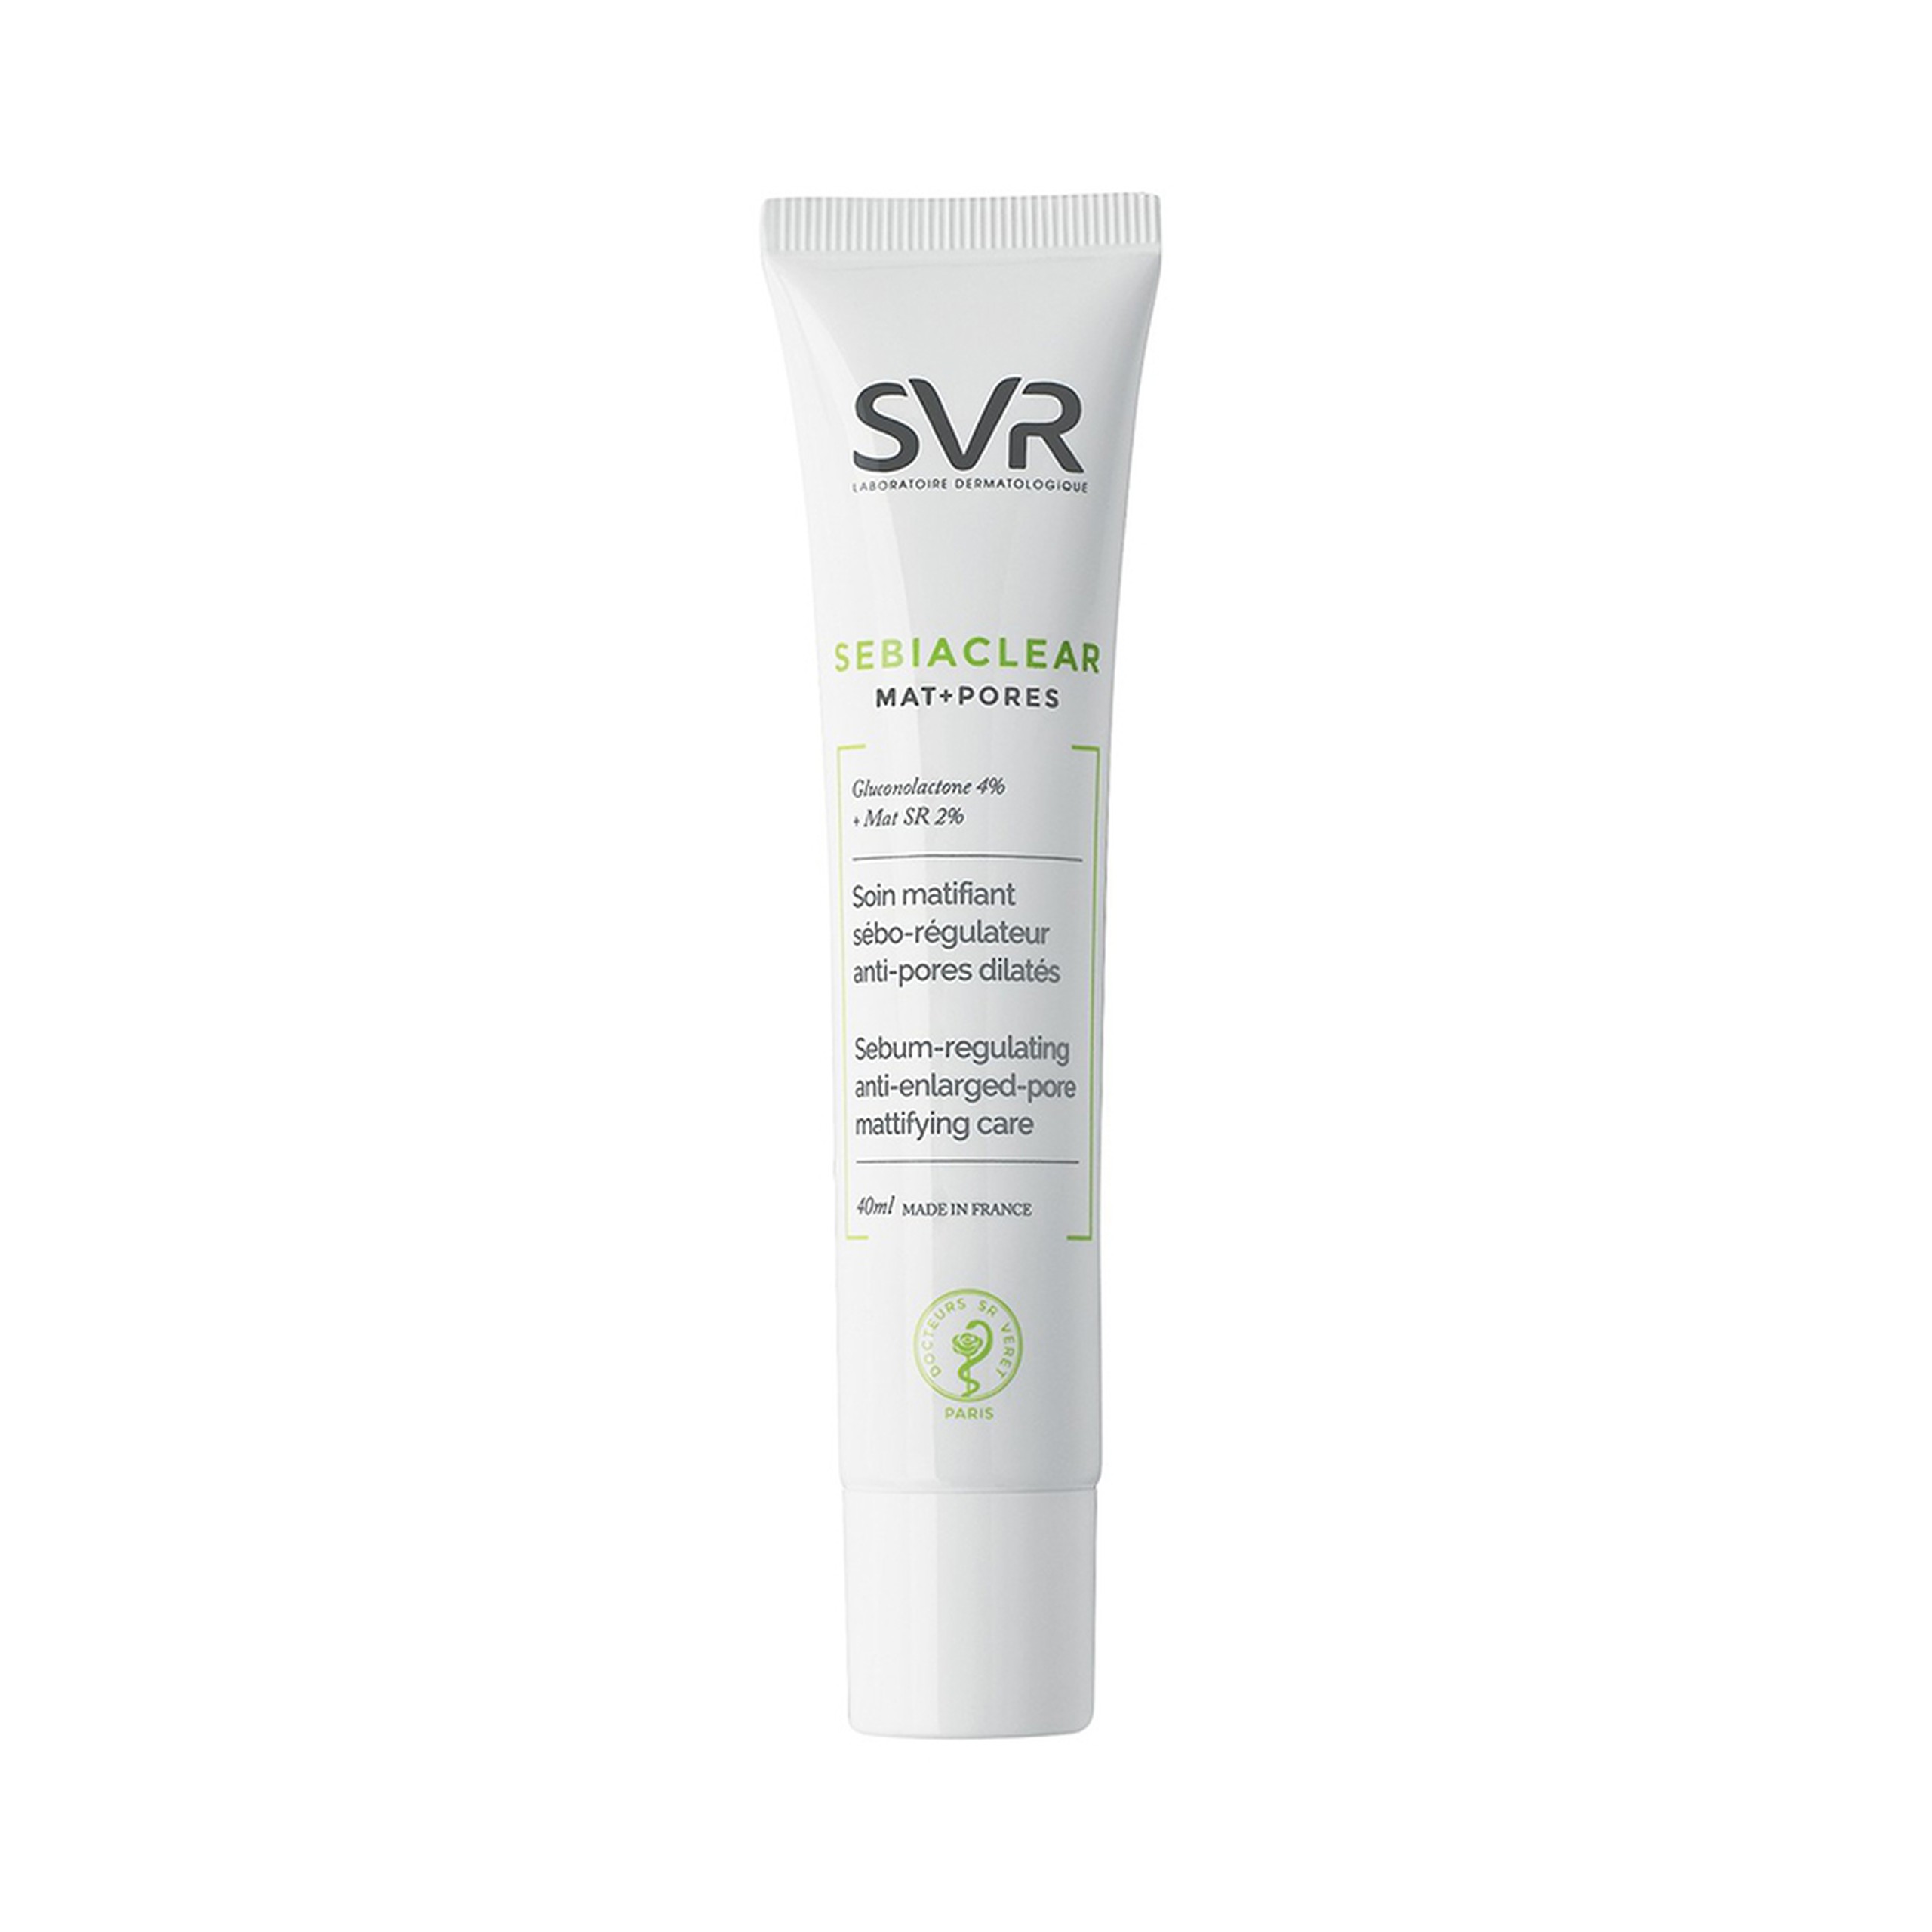 Kem SVR Sebiaclear Mat And Pores điều hòa bã nhờn, dưỡng ẩm, thu nhỏ lỗ chân lông (40ml)